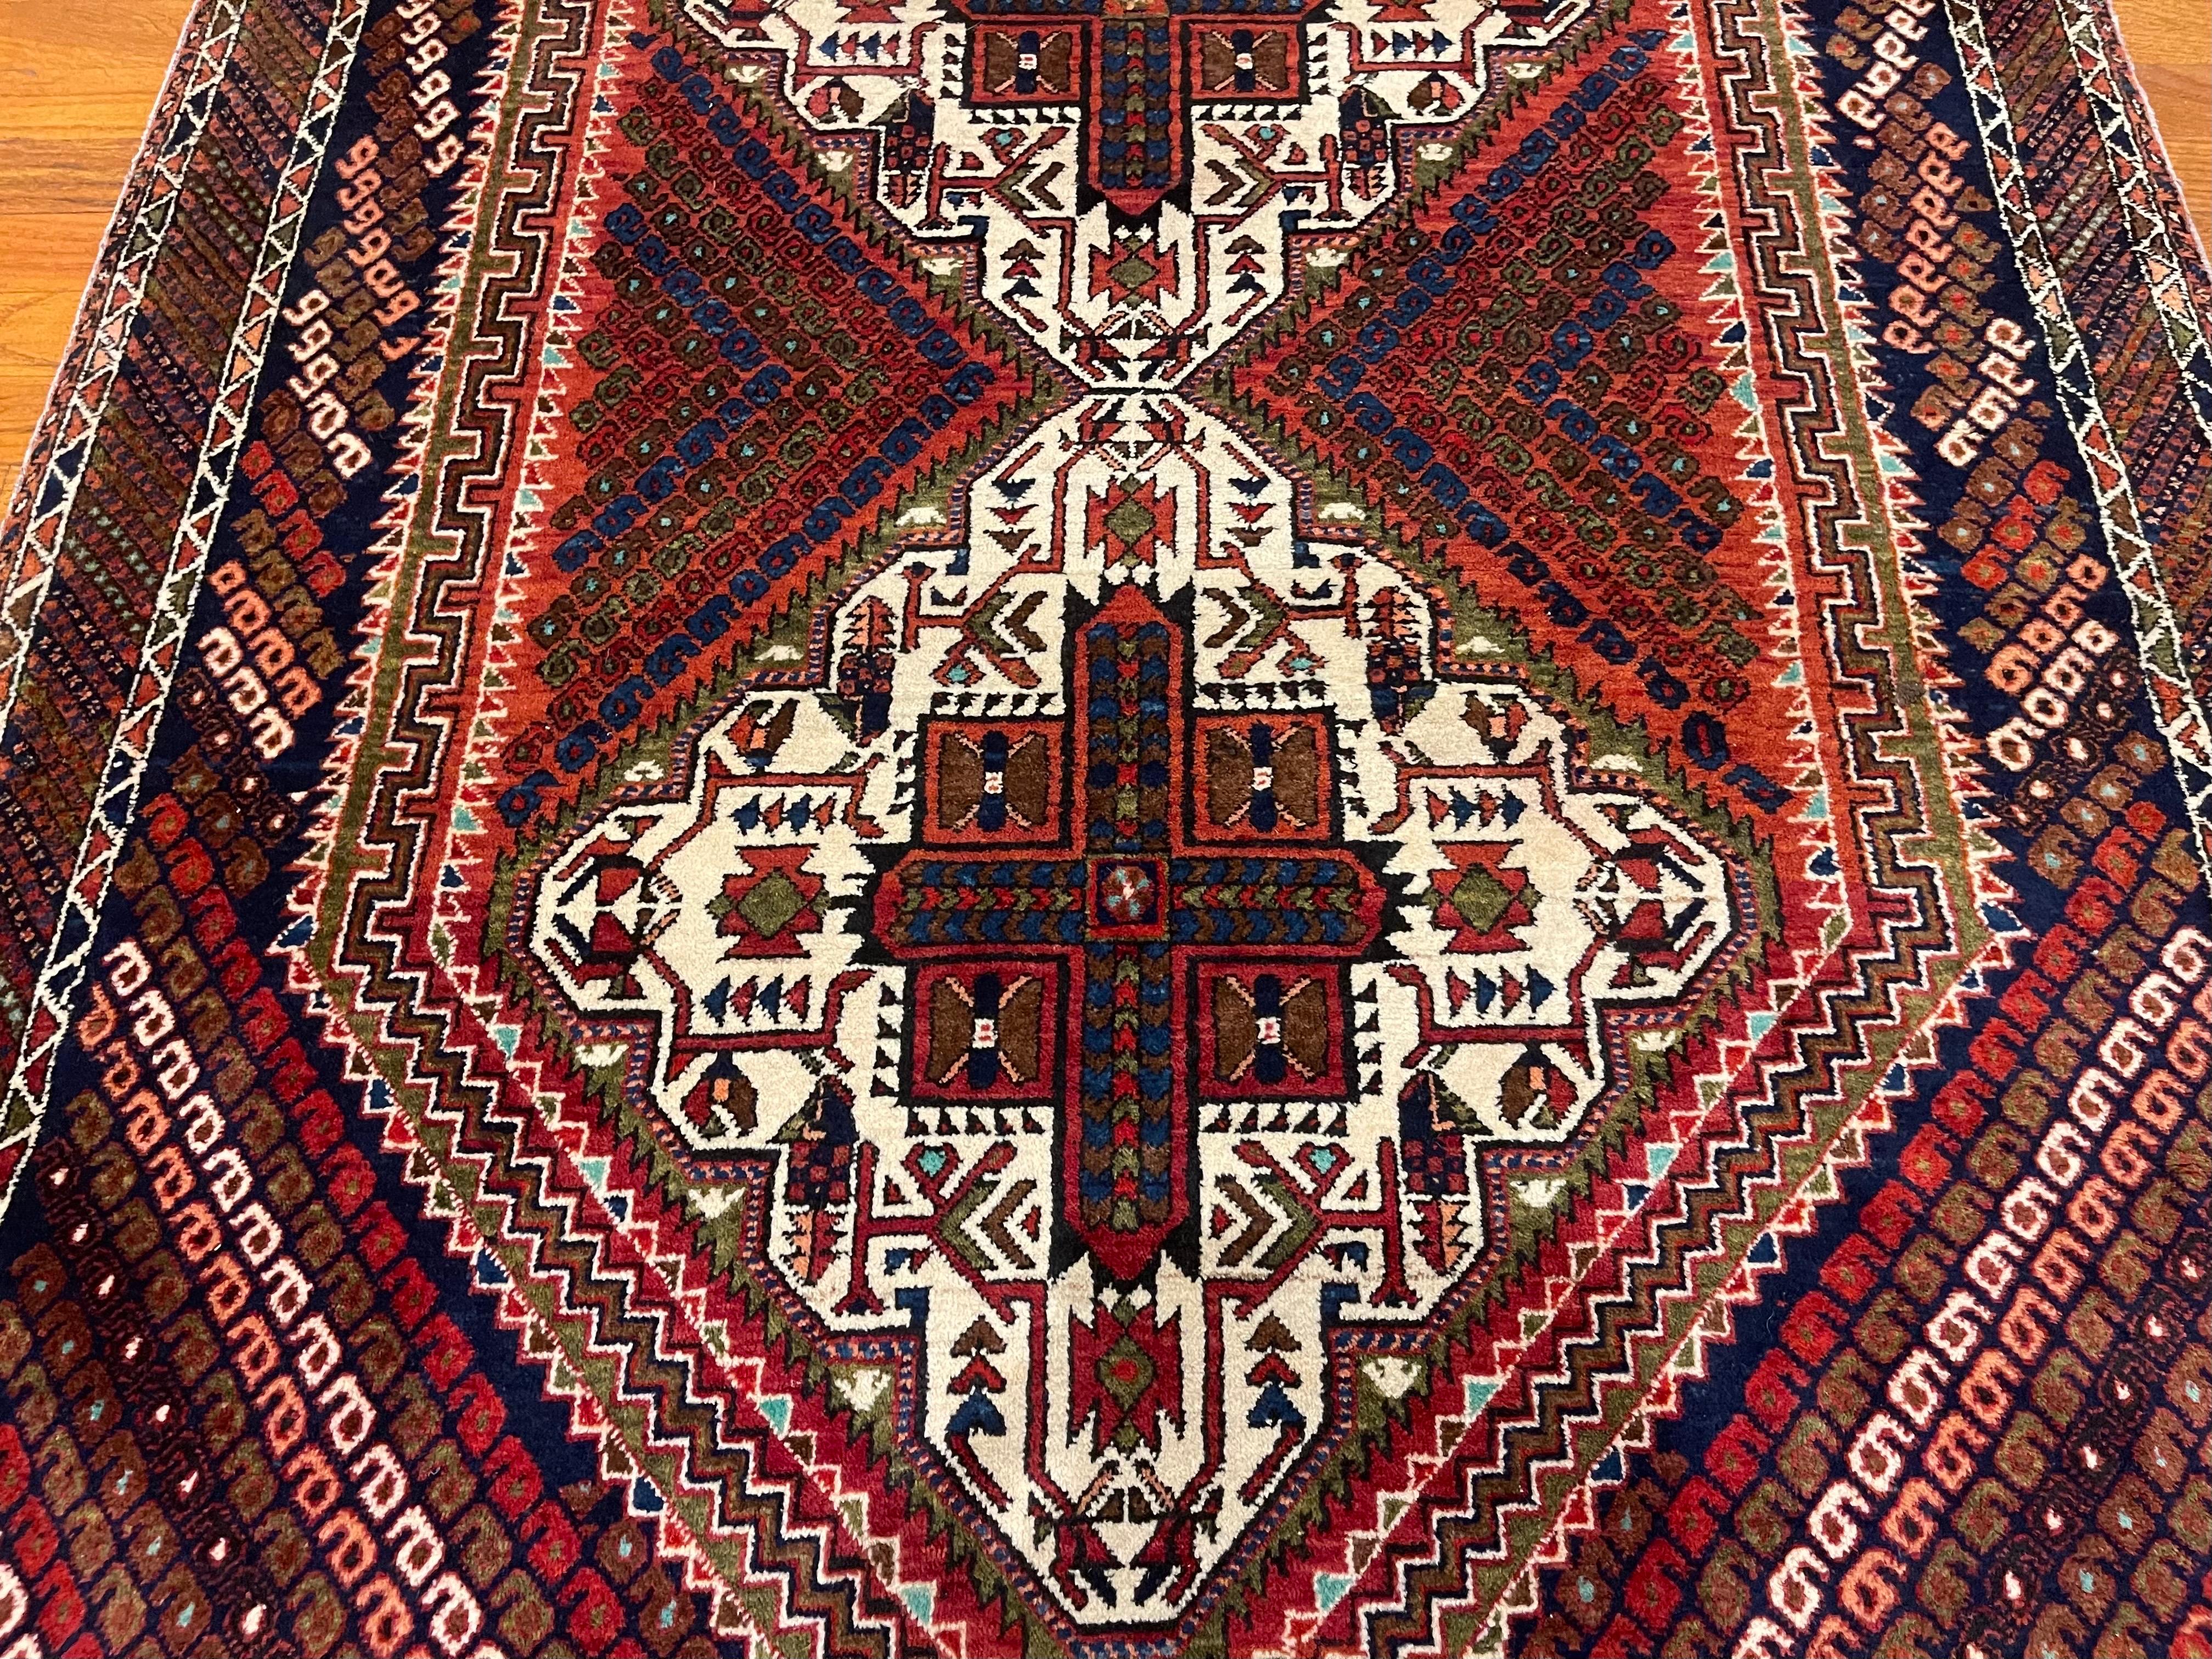 Dieser Teppich ist ein authentischer Teppich aus dem Iran. Afshars sind Stammesteppiche, die vom Volk der Afshar im südlichen Iran handgeknüpft werden. Der Flor besteht aus Wolle und die Grundlage aus Baumwolle. Die Grundfarbe ist cremefarben mit